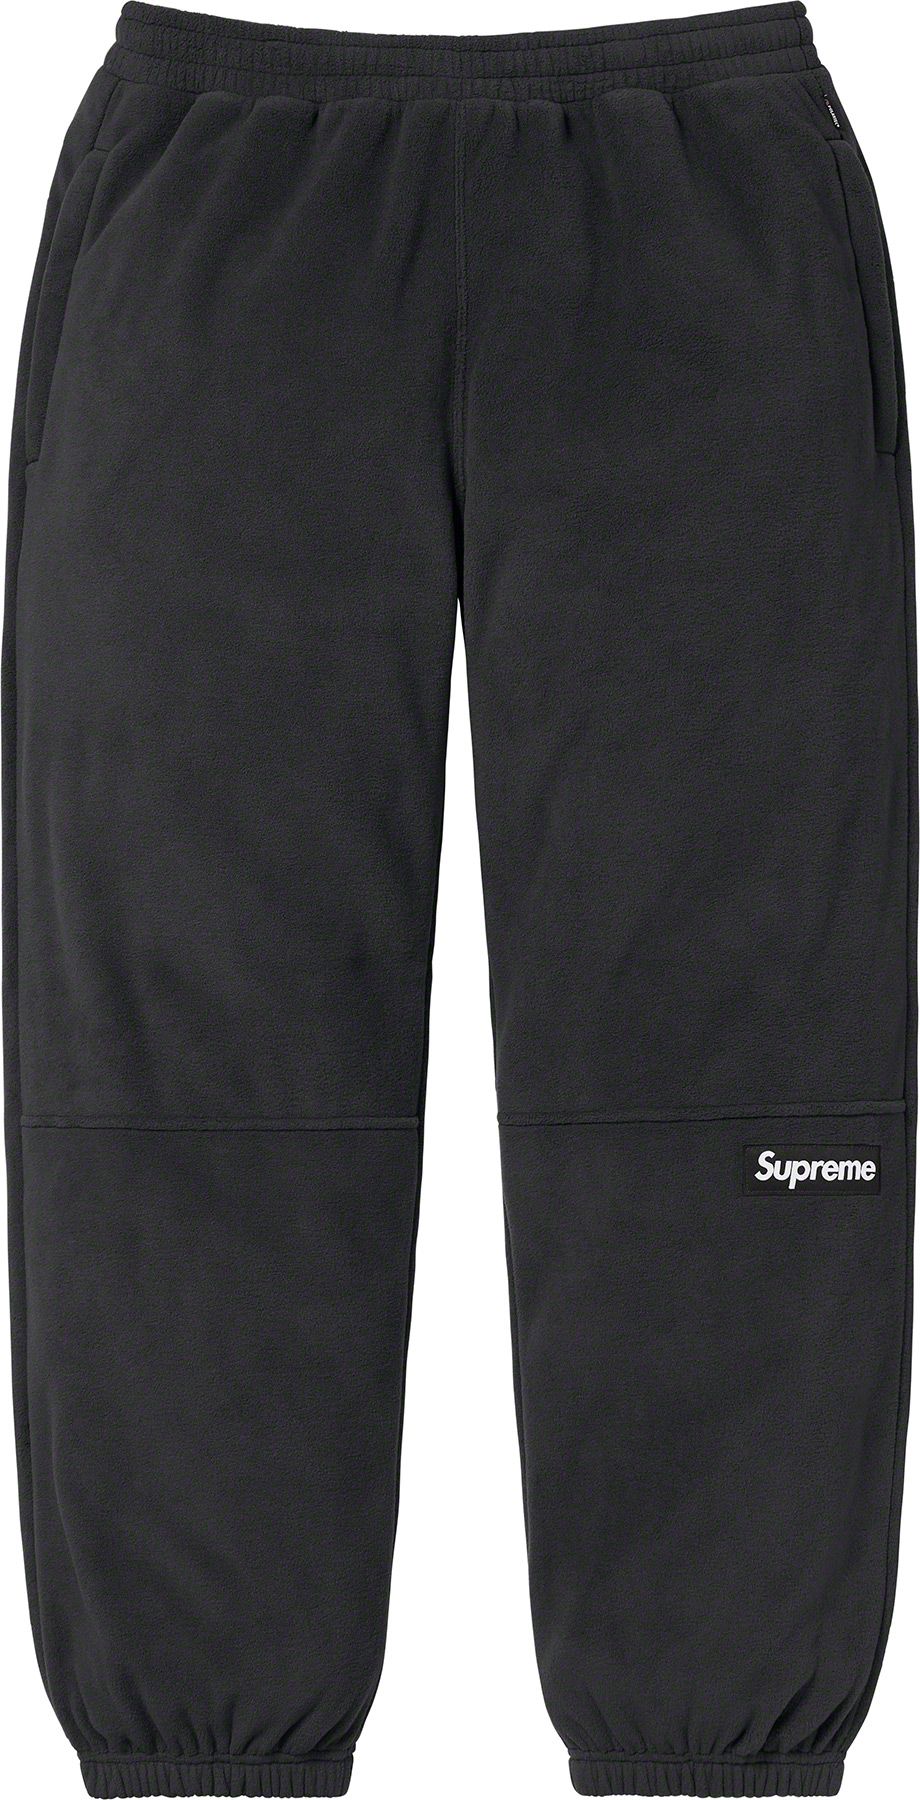 Supreme Polartec pant black XL-